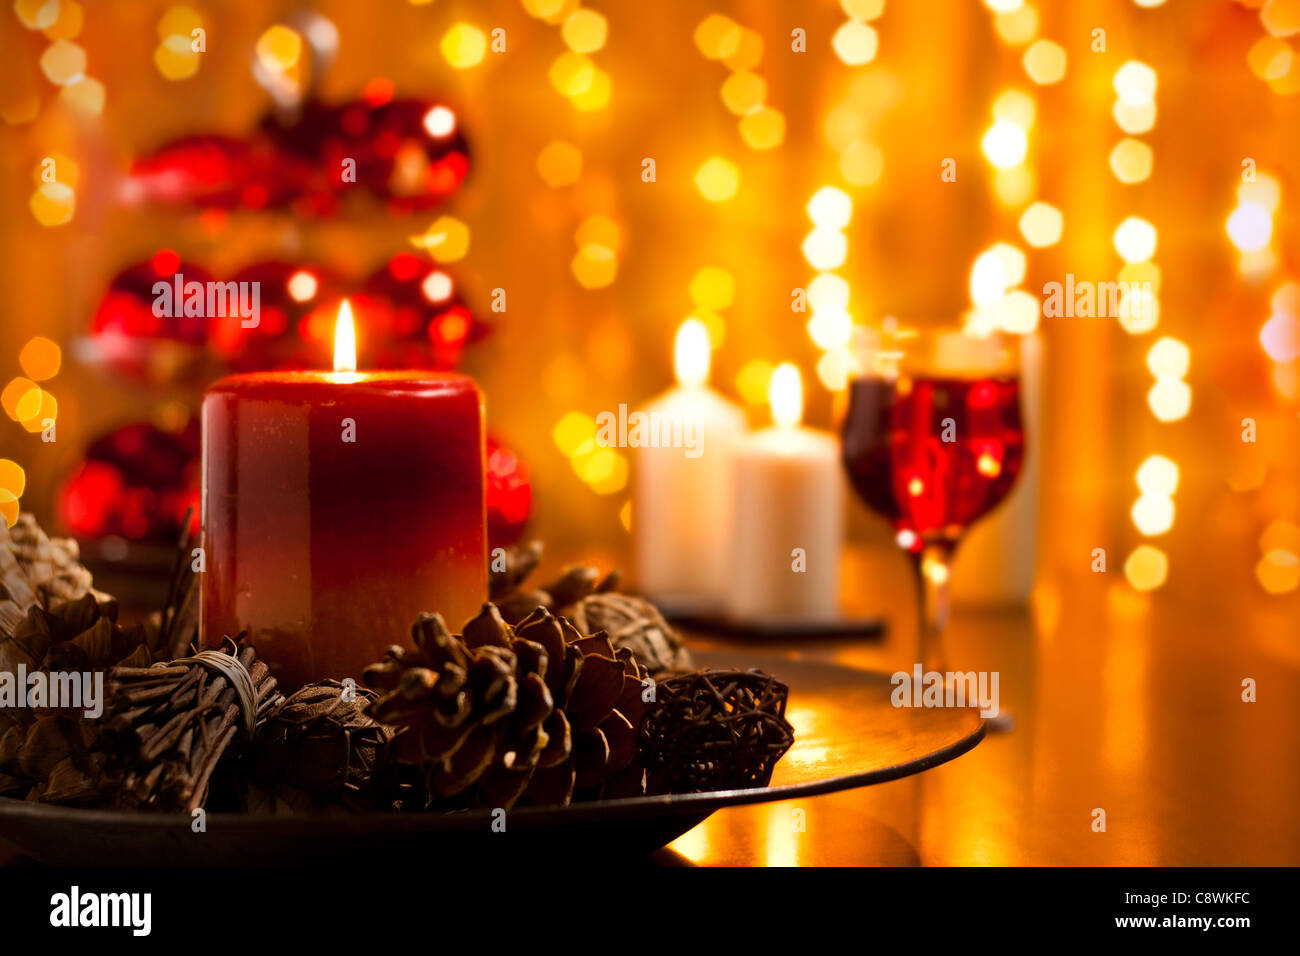 Weihnachtsschmuck und Kerzen Set auf einem Esstisch Stockfotografie - Alamy